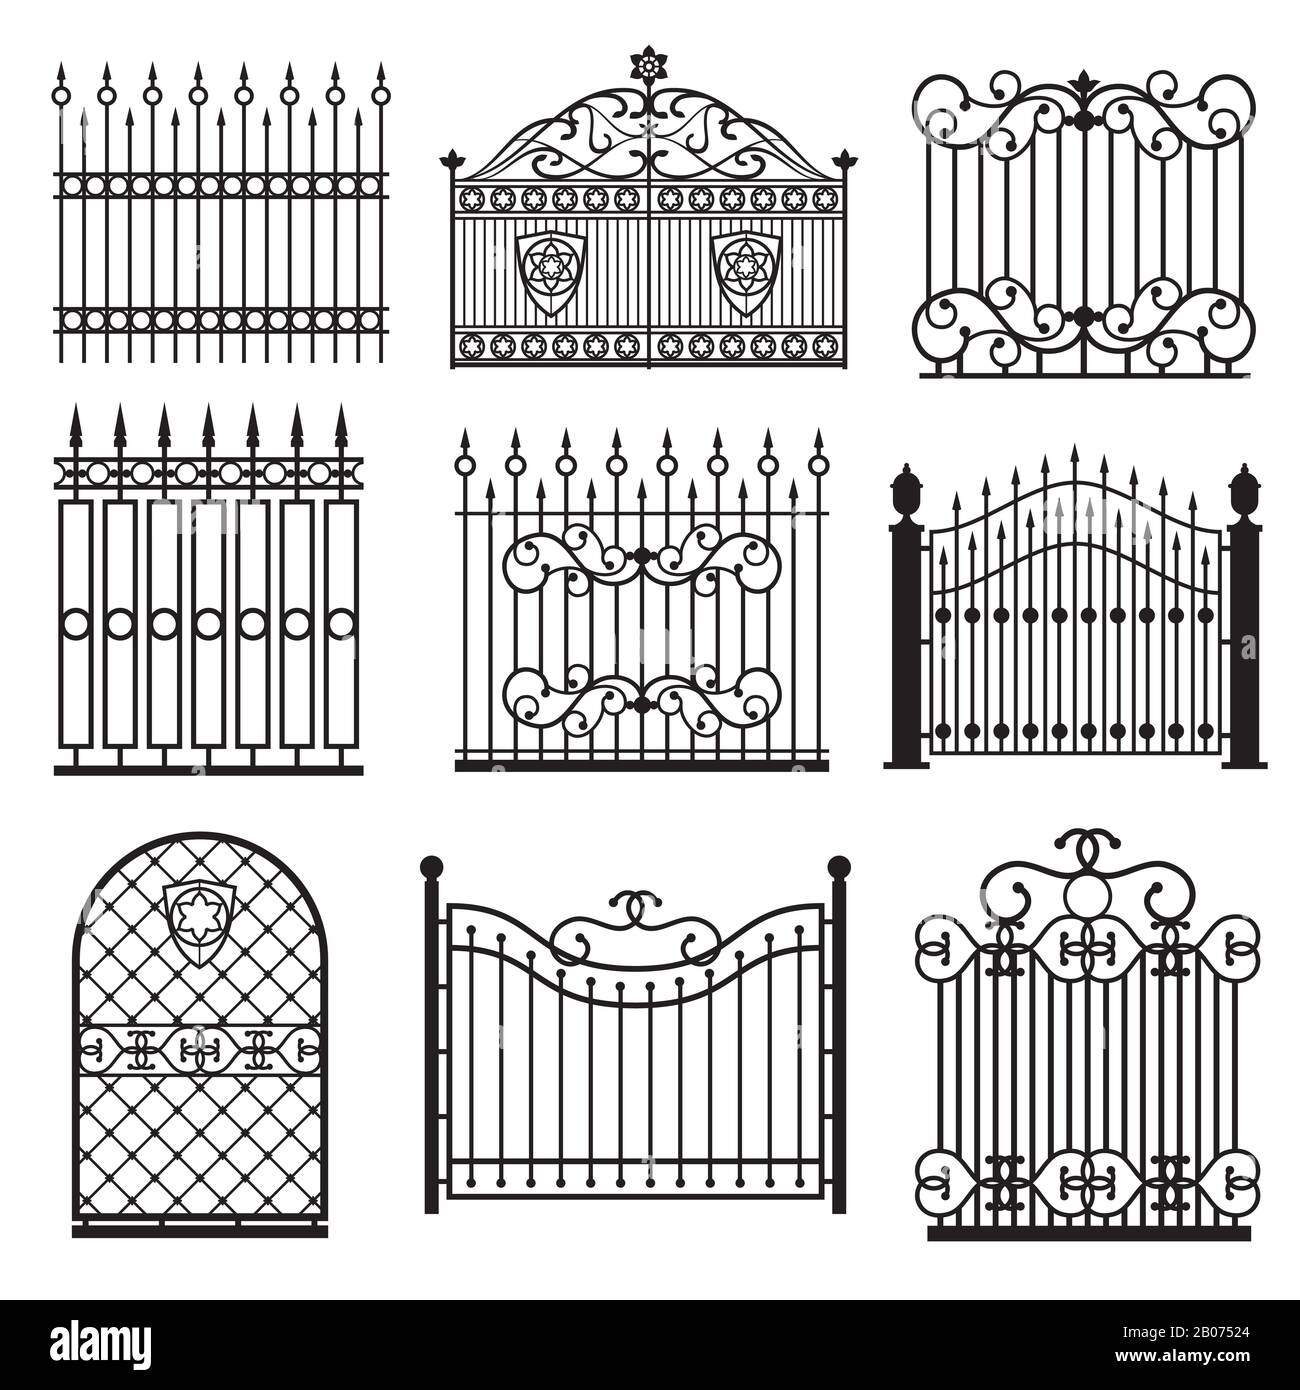 Siluetas decorativas negras de cercas con juego de vectores de puertas. Decoración arquitectura entramado estructura ilustración Ilustración del Vector